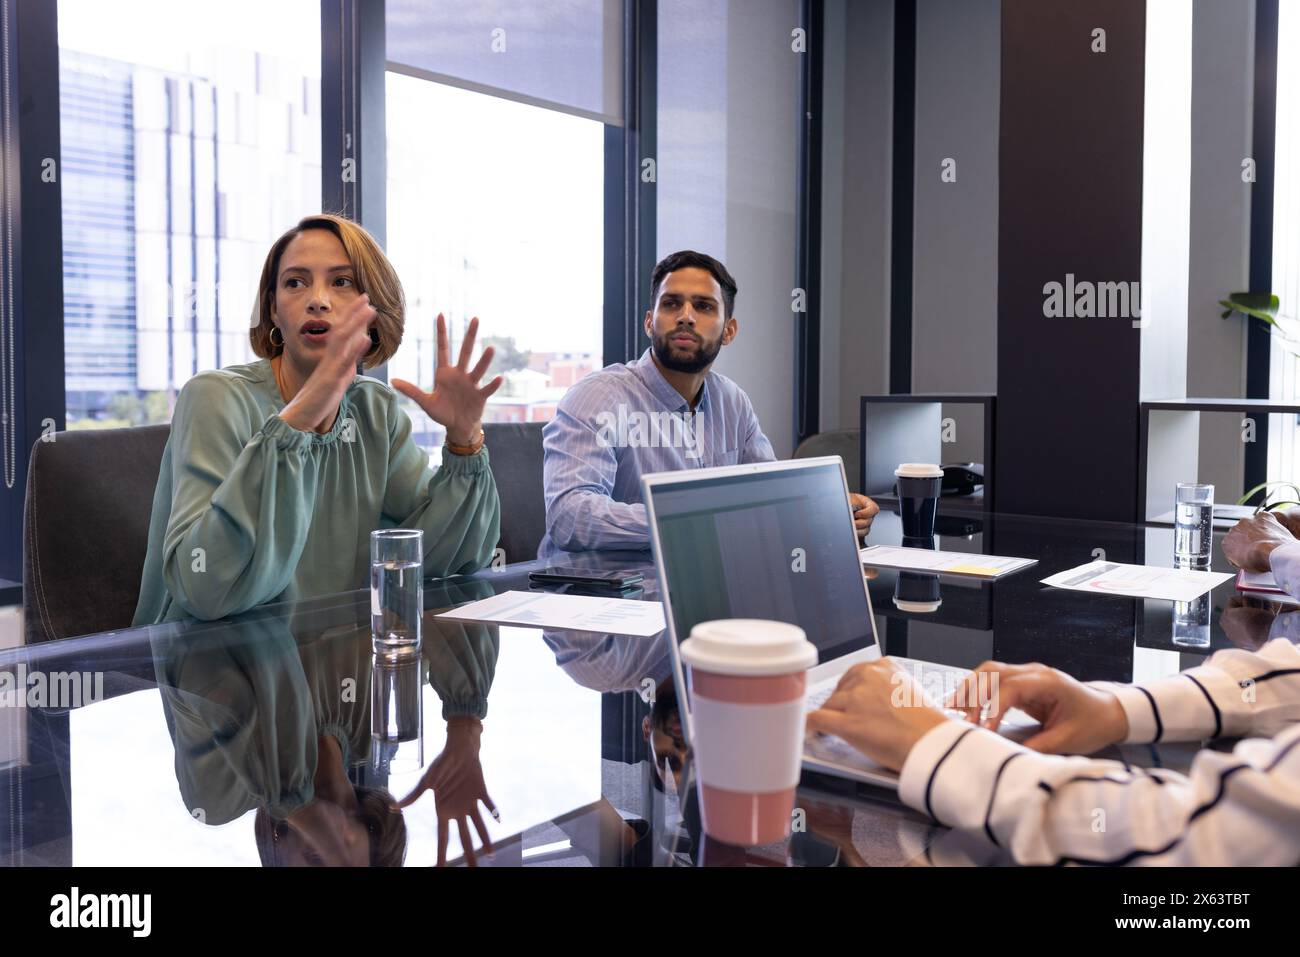 Équipe diversifiée s'engageant dans la réunion au bureau, femme portant un chemisier vert Banque D'Images